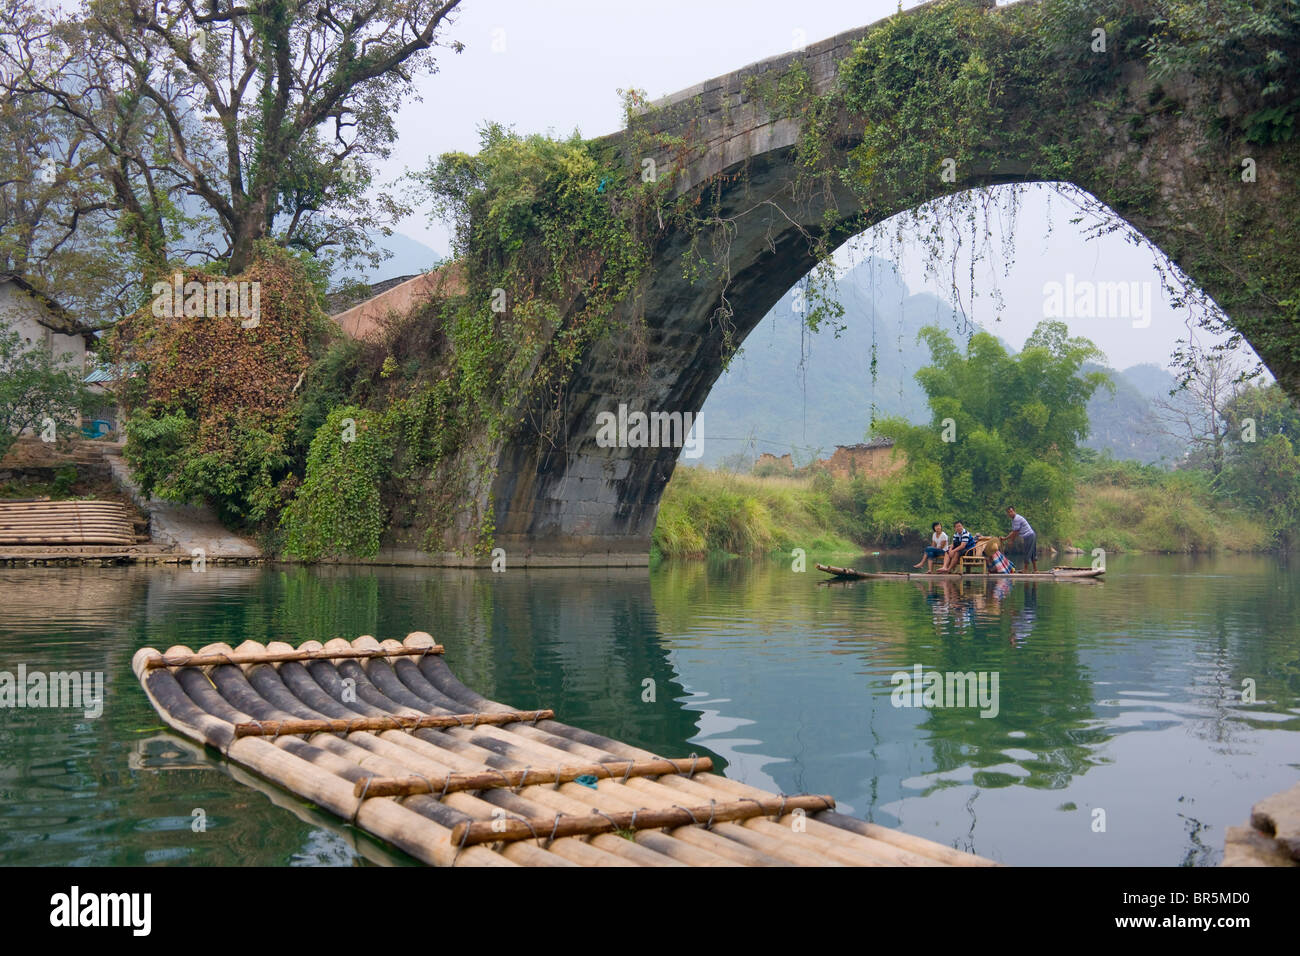 Tourists on bamboo raft on Li River, Yangshuo, Guangxi, China Stock Photo